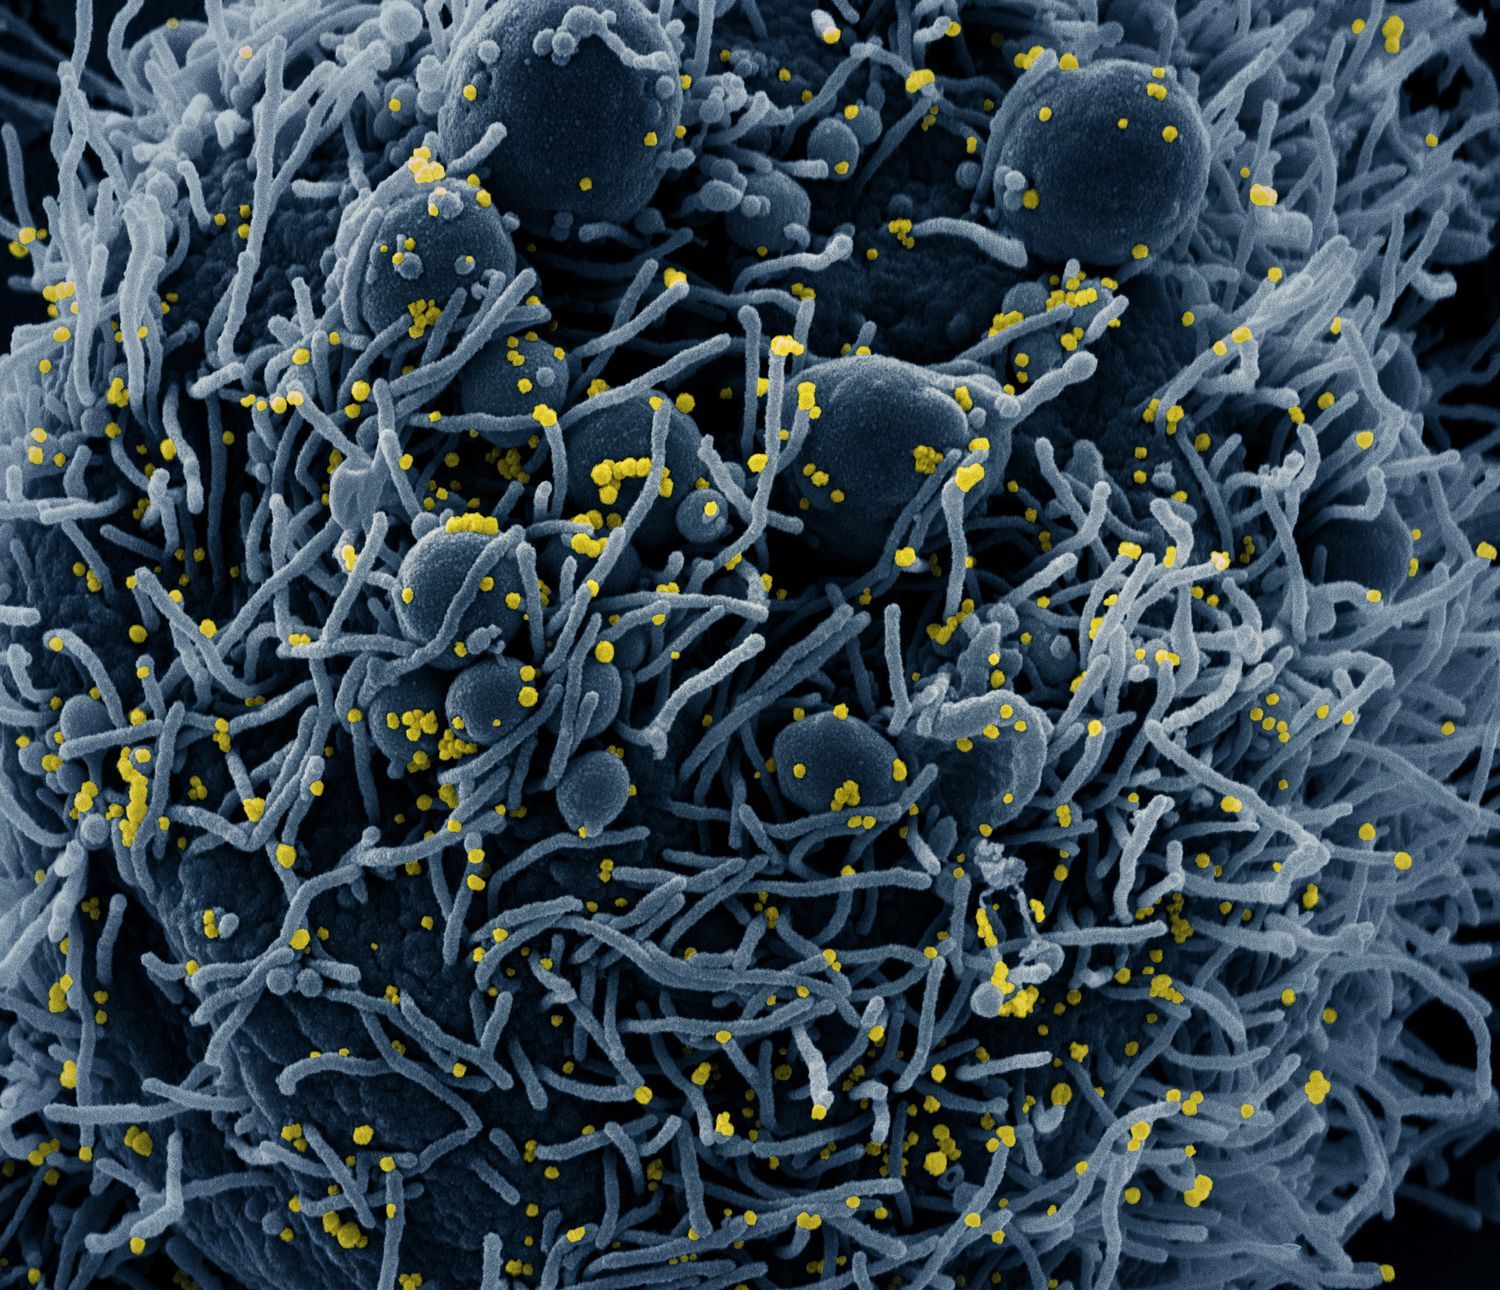 Fotografie koronaviru napadajícího buňky na snímcích z elektronkového mikroskopu, pořízené americkým Národním institutem pro alergie a infekční nemoci NIAID